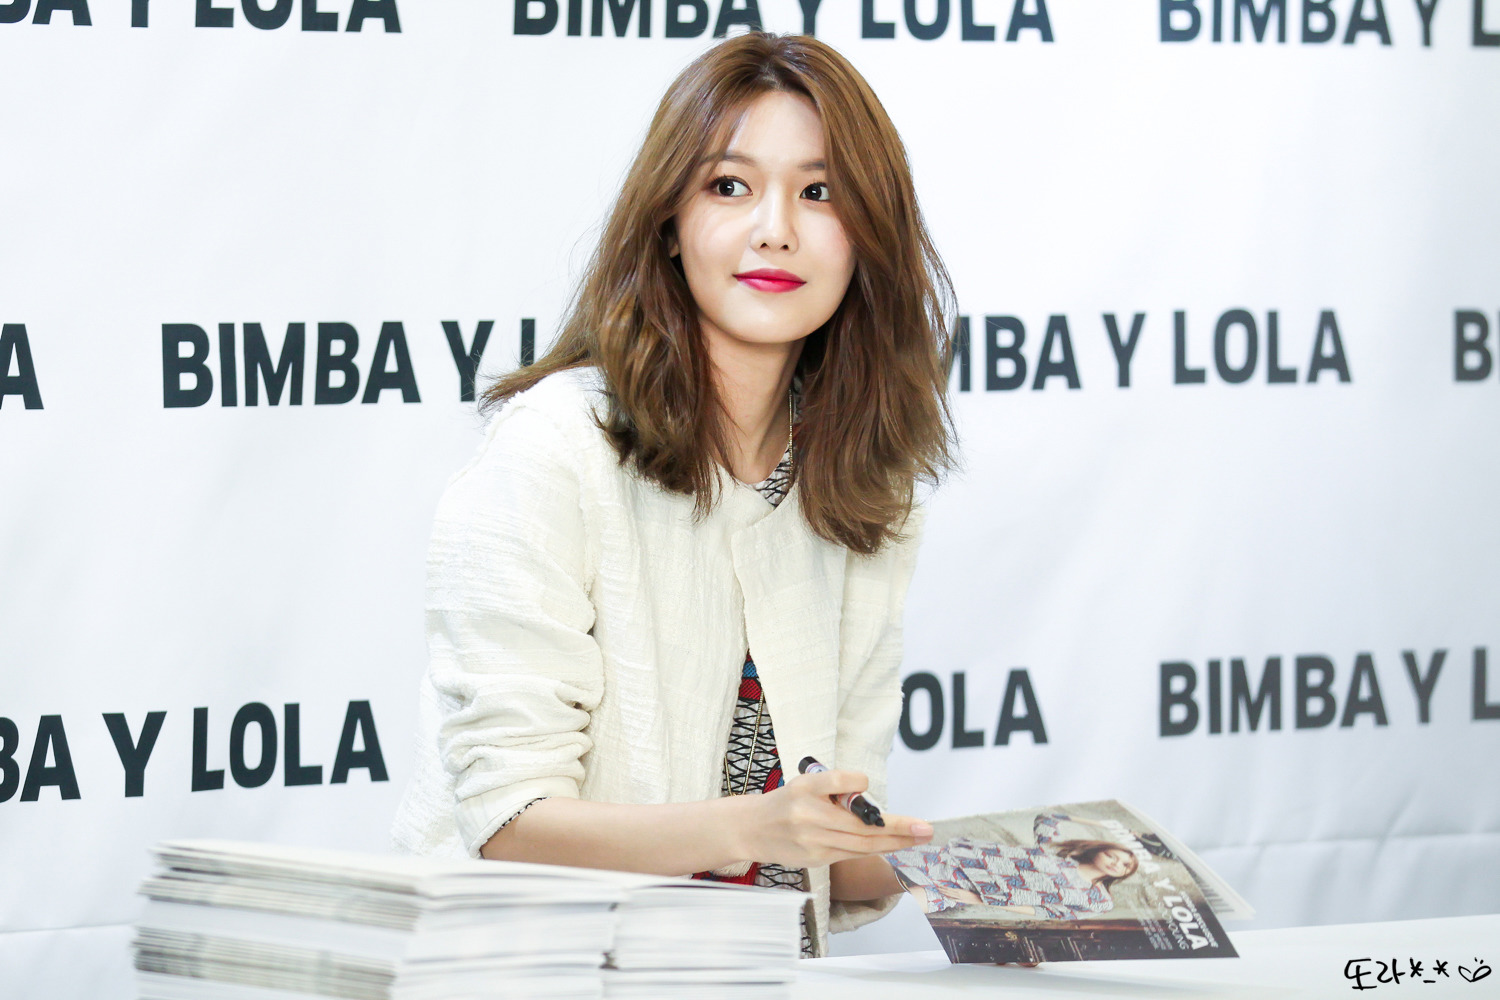 [PIC][10-03-2017]SooYoung tham dự buổi Fansign cho dòng thời trang "BIMBA Y LOLA" tại Lotte Department Store vào chiều nay - Page 2 2462F542590C73E320E418